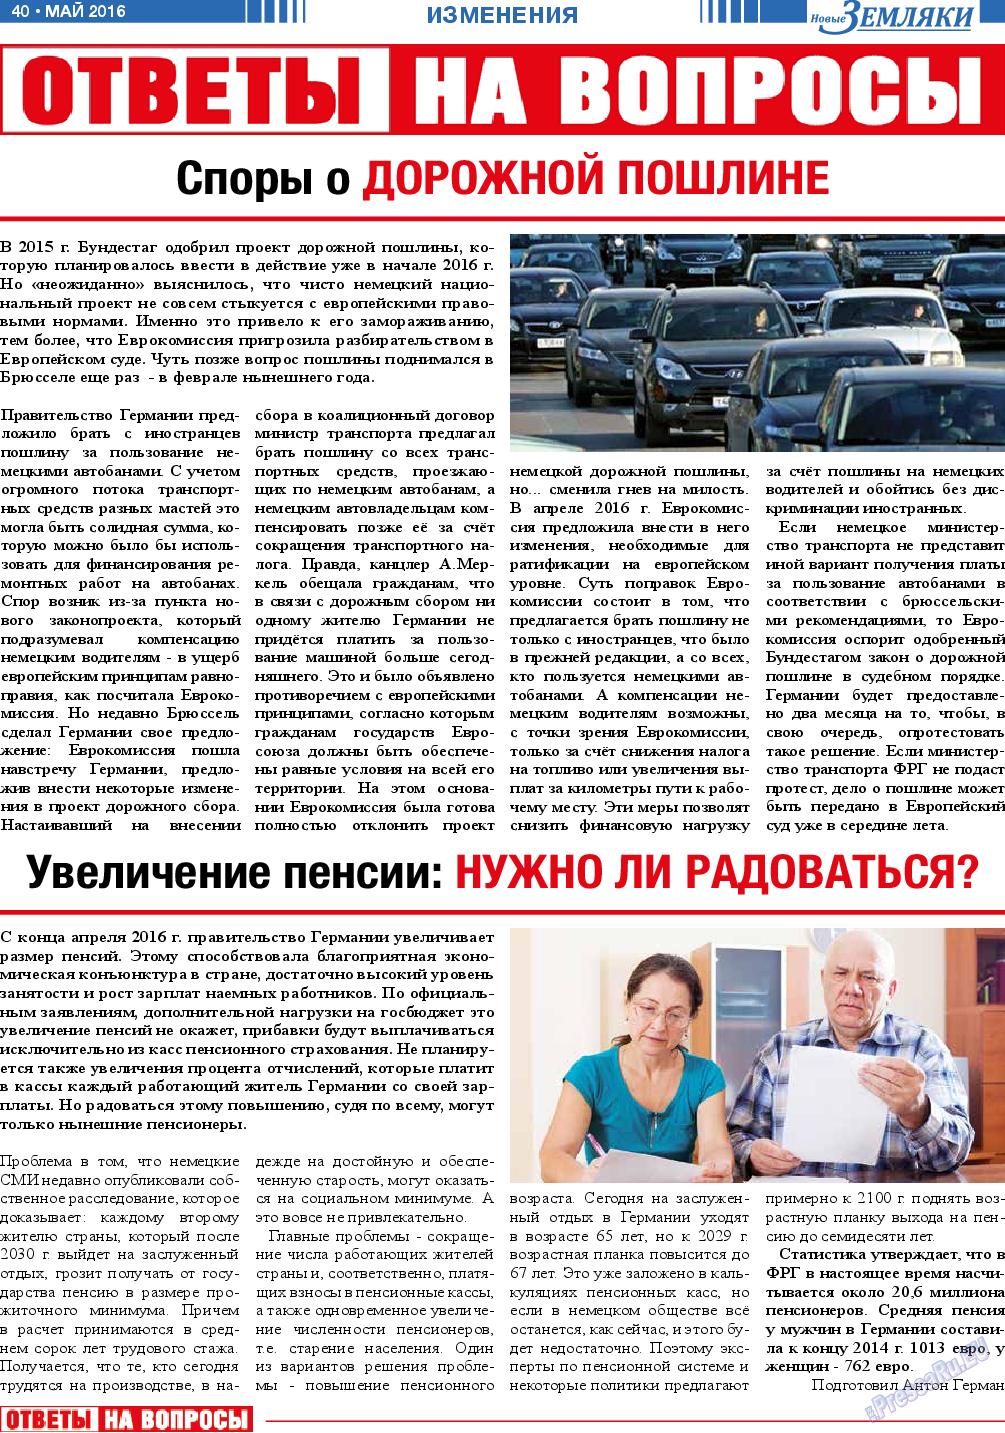 Новые Земляки, газета. 2016 №5 стр.40